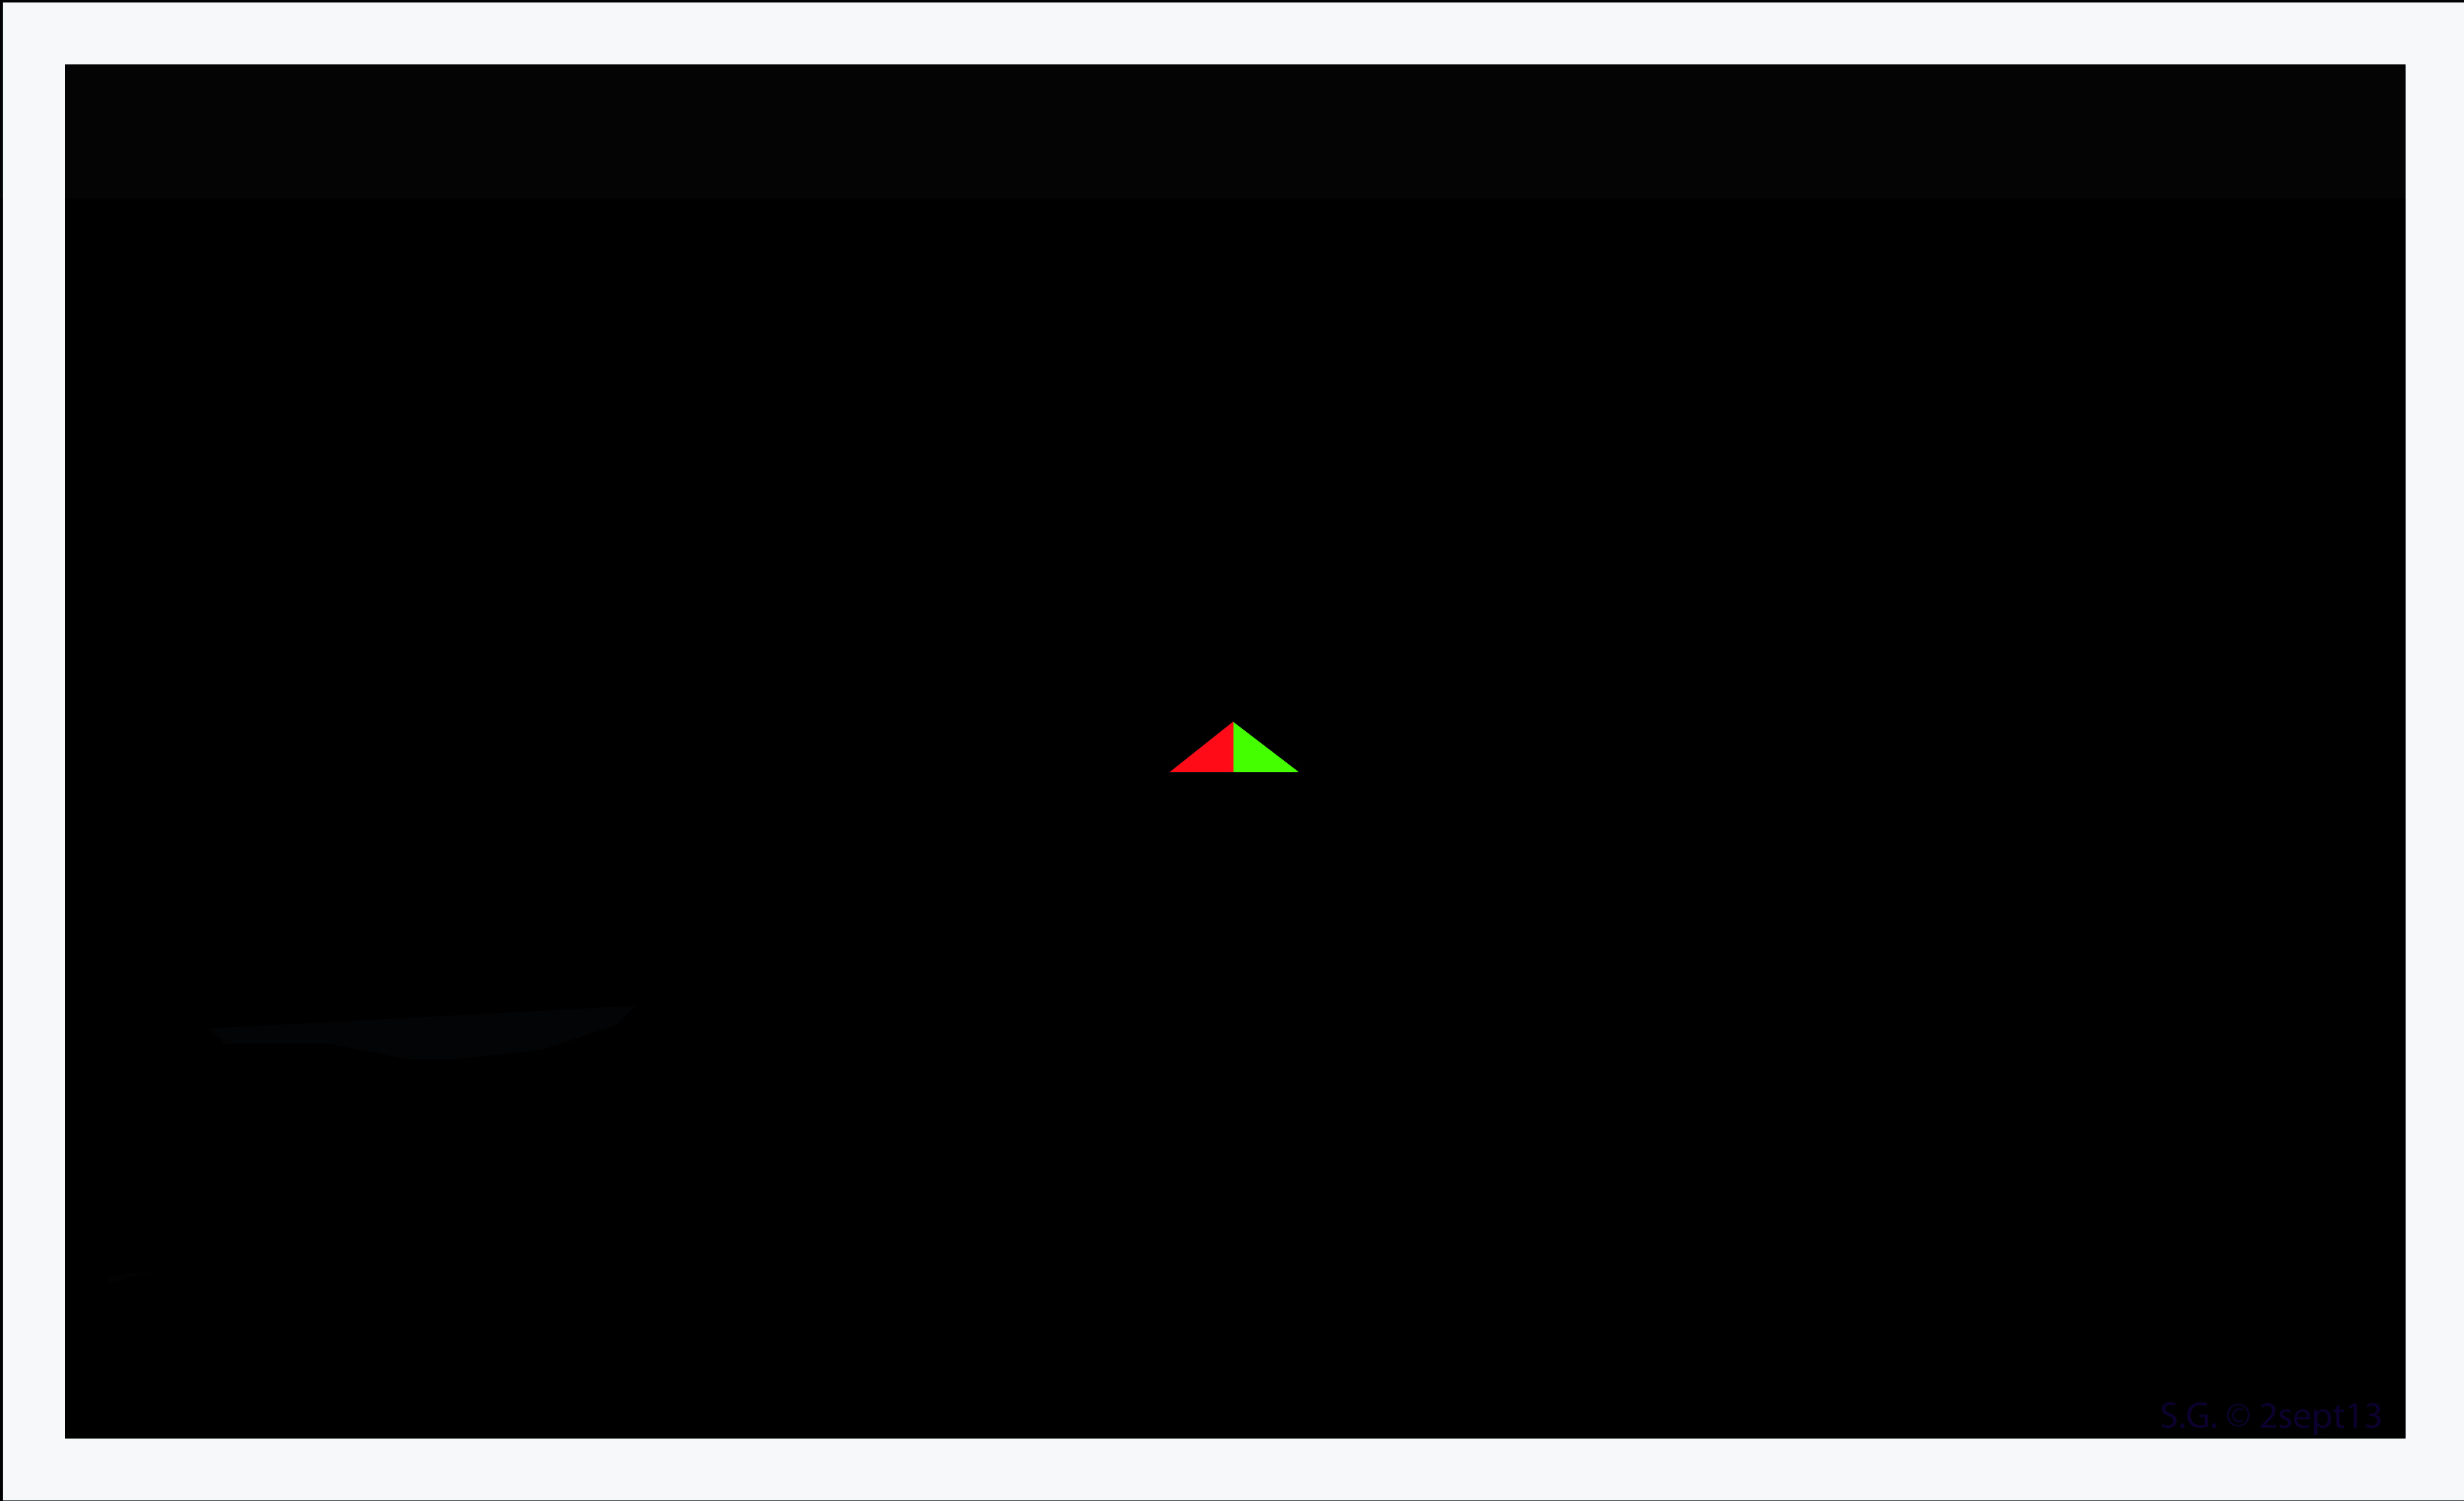 2013: le 02/09 à 22h - Ovni en Forme de triangle - onard - Landes (dép.40) Ovni00001